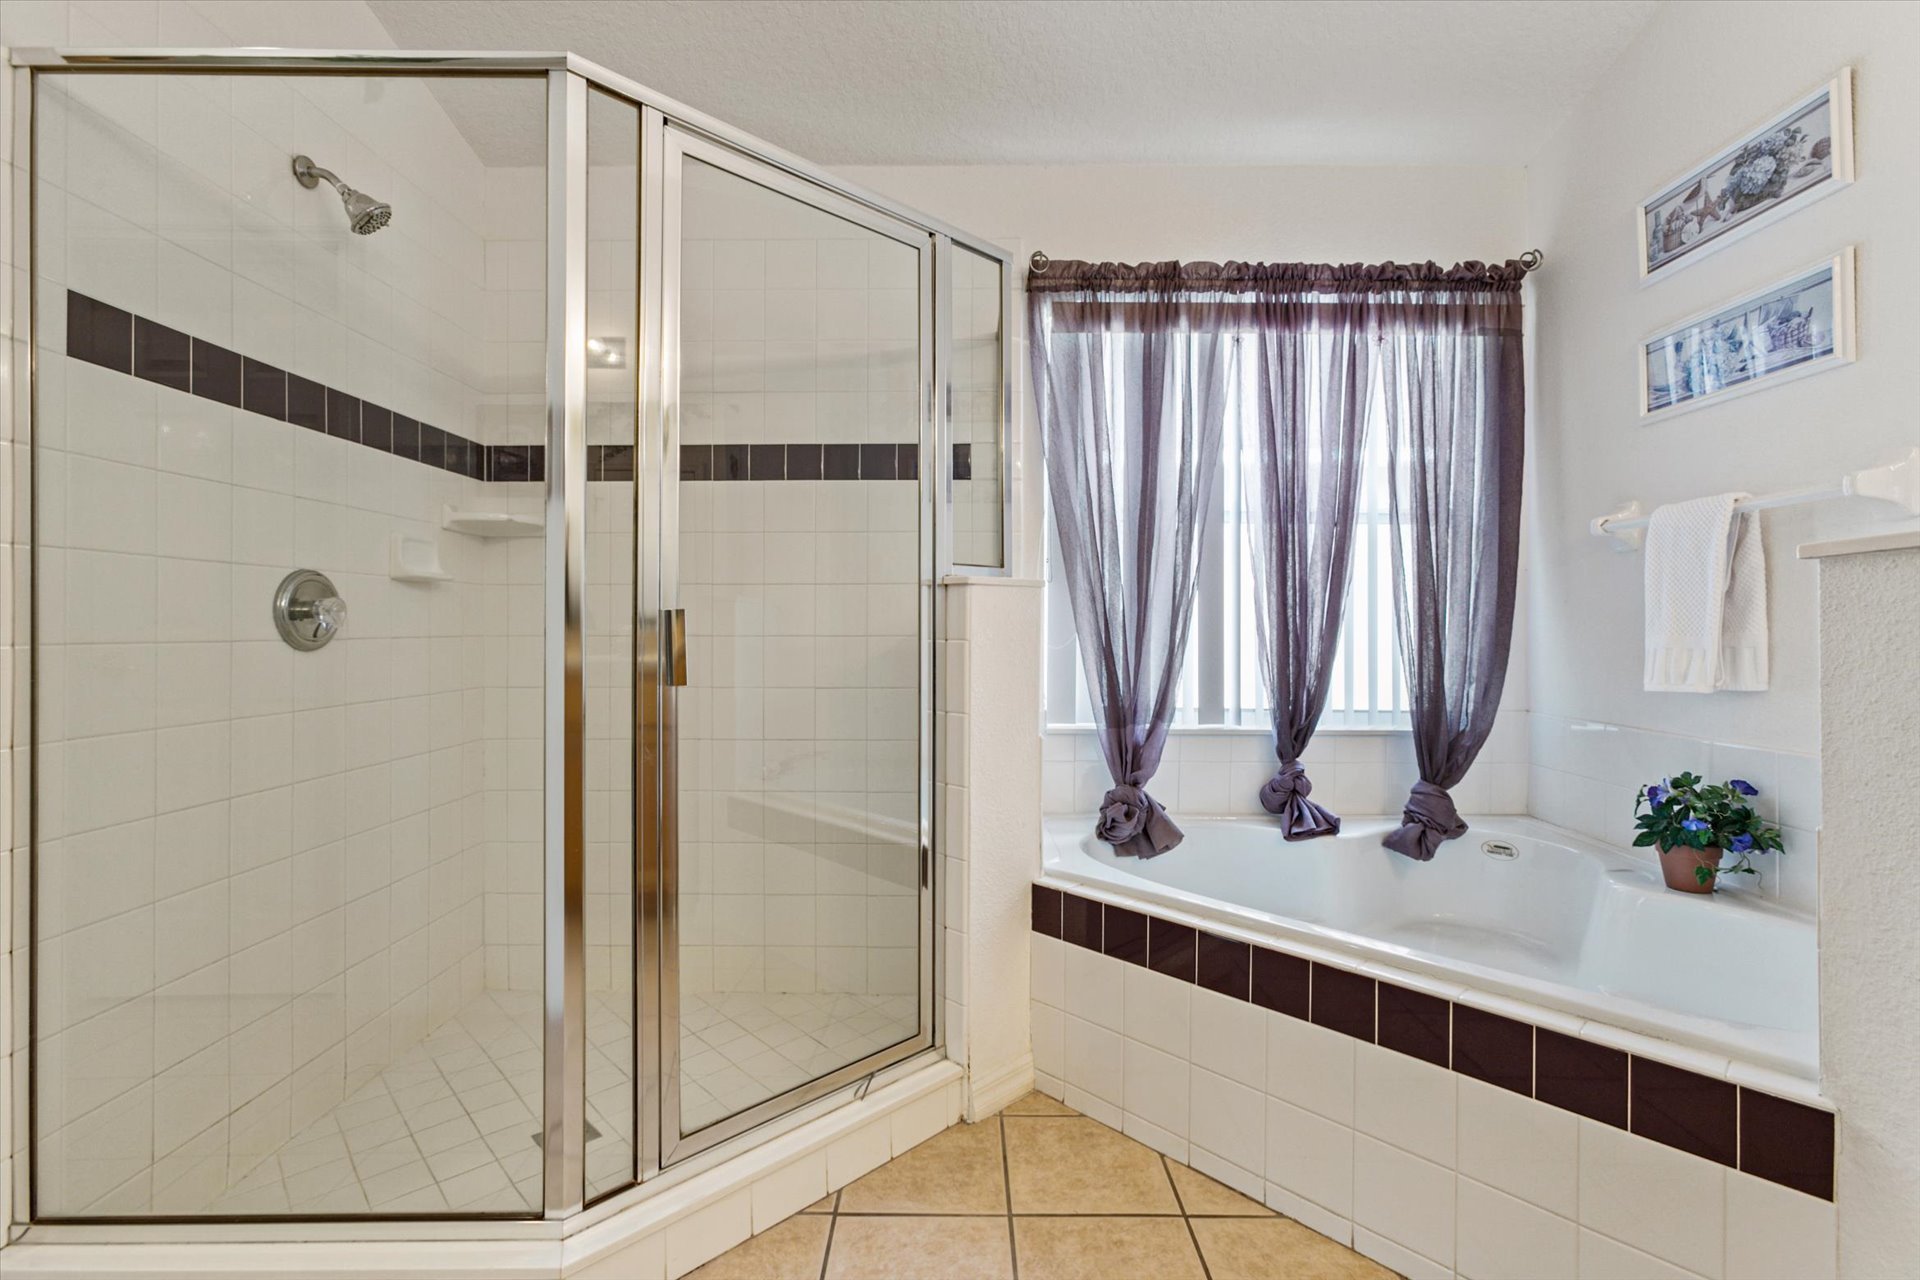 Master King Bathroom 1 (Angle)
Tub and Shower